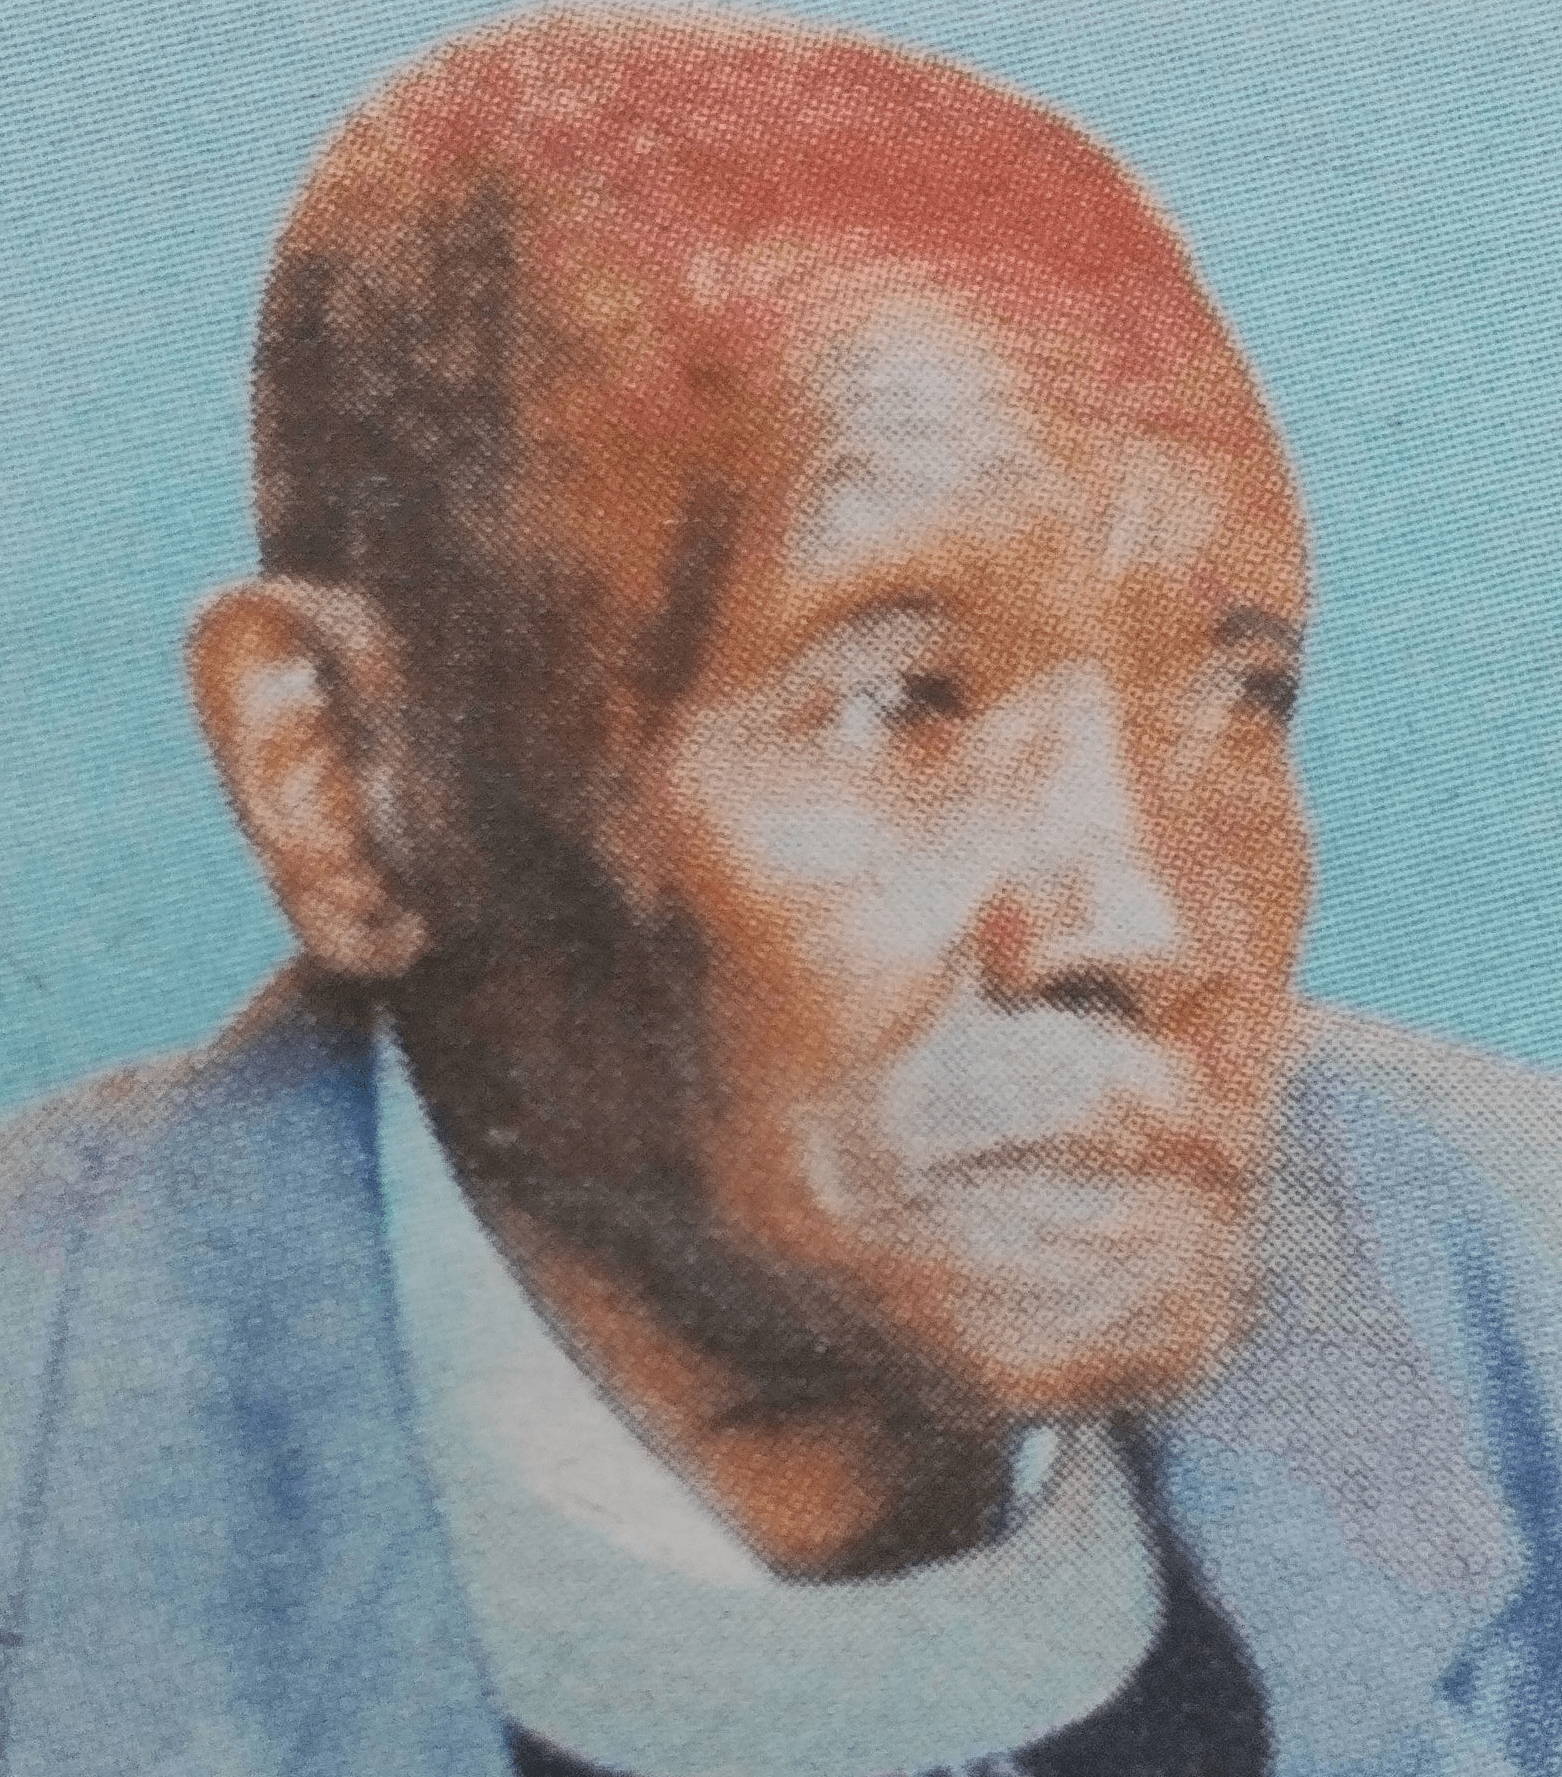 Obituary Image of Jackson Ndolo Mutua “Baba Sweetie”